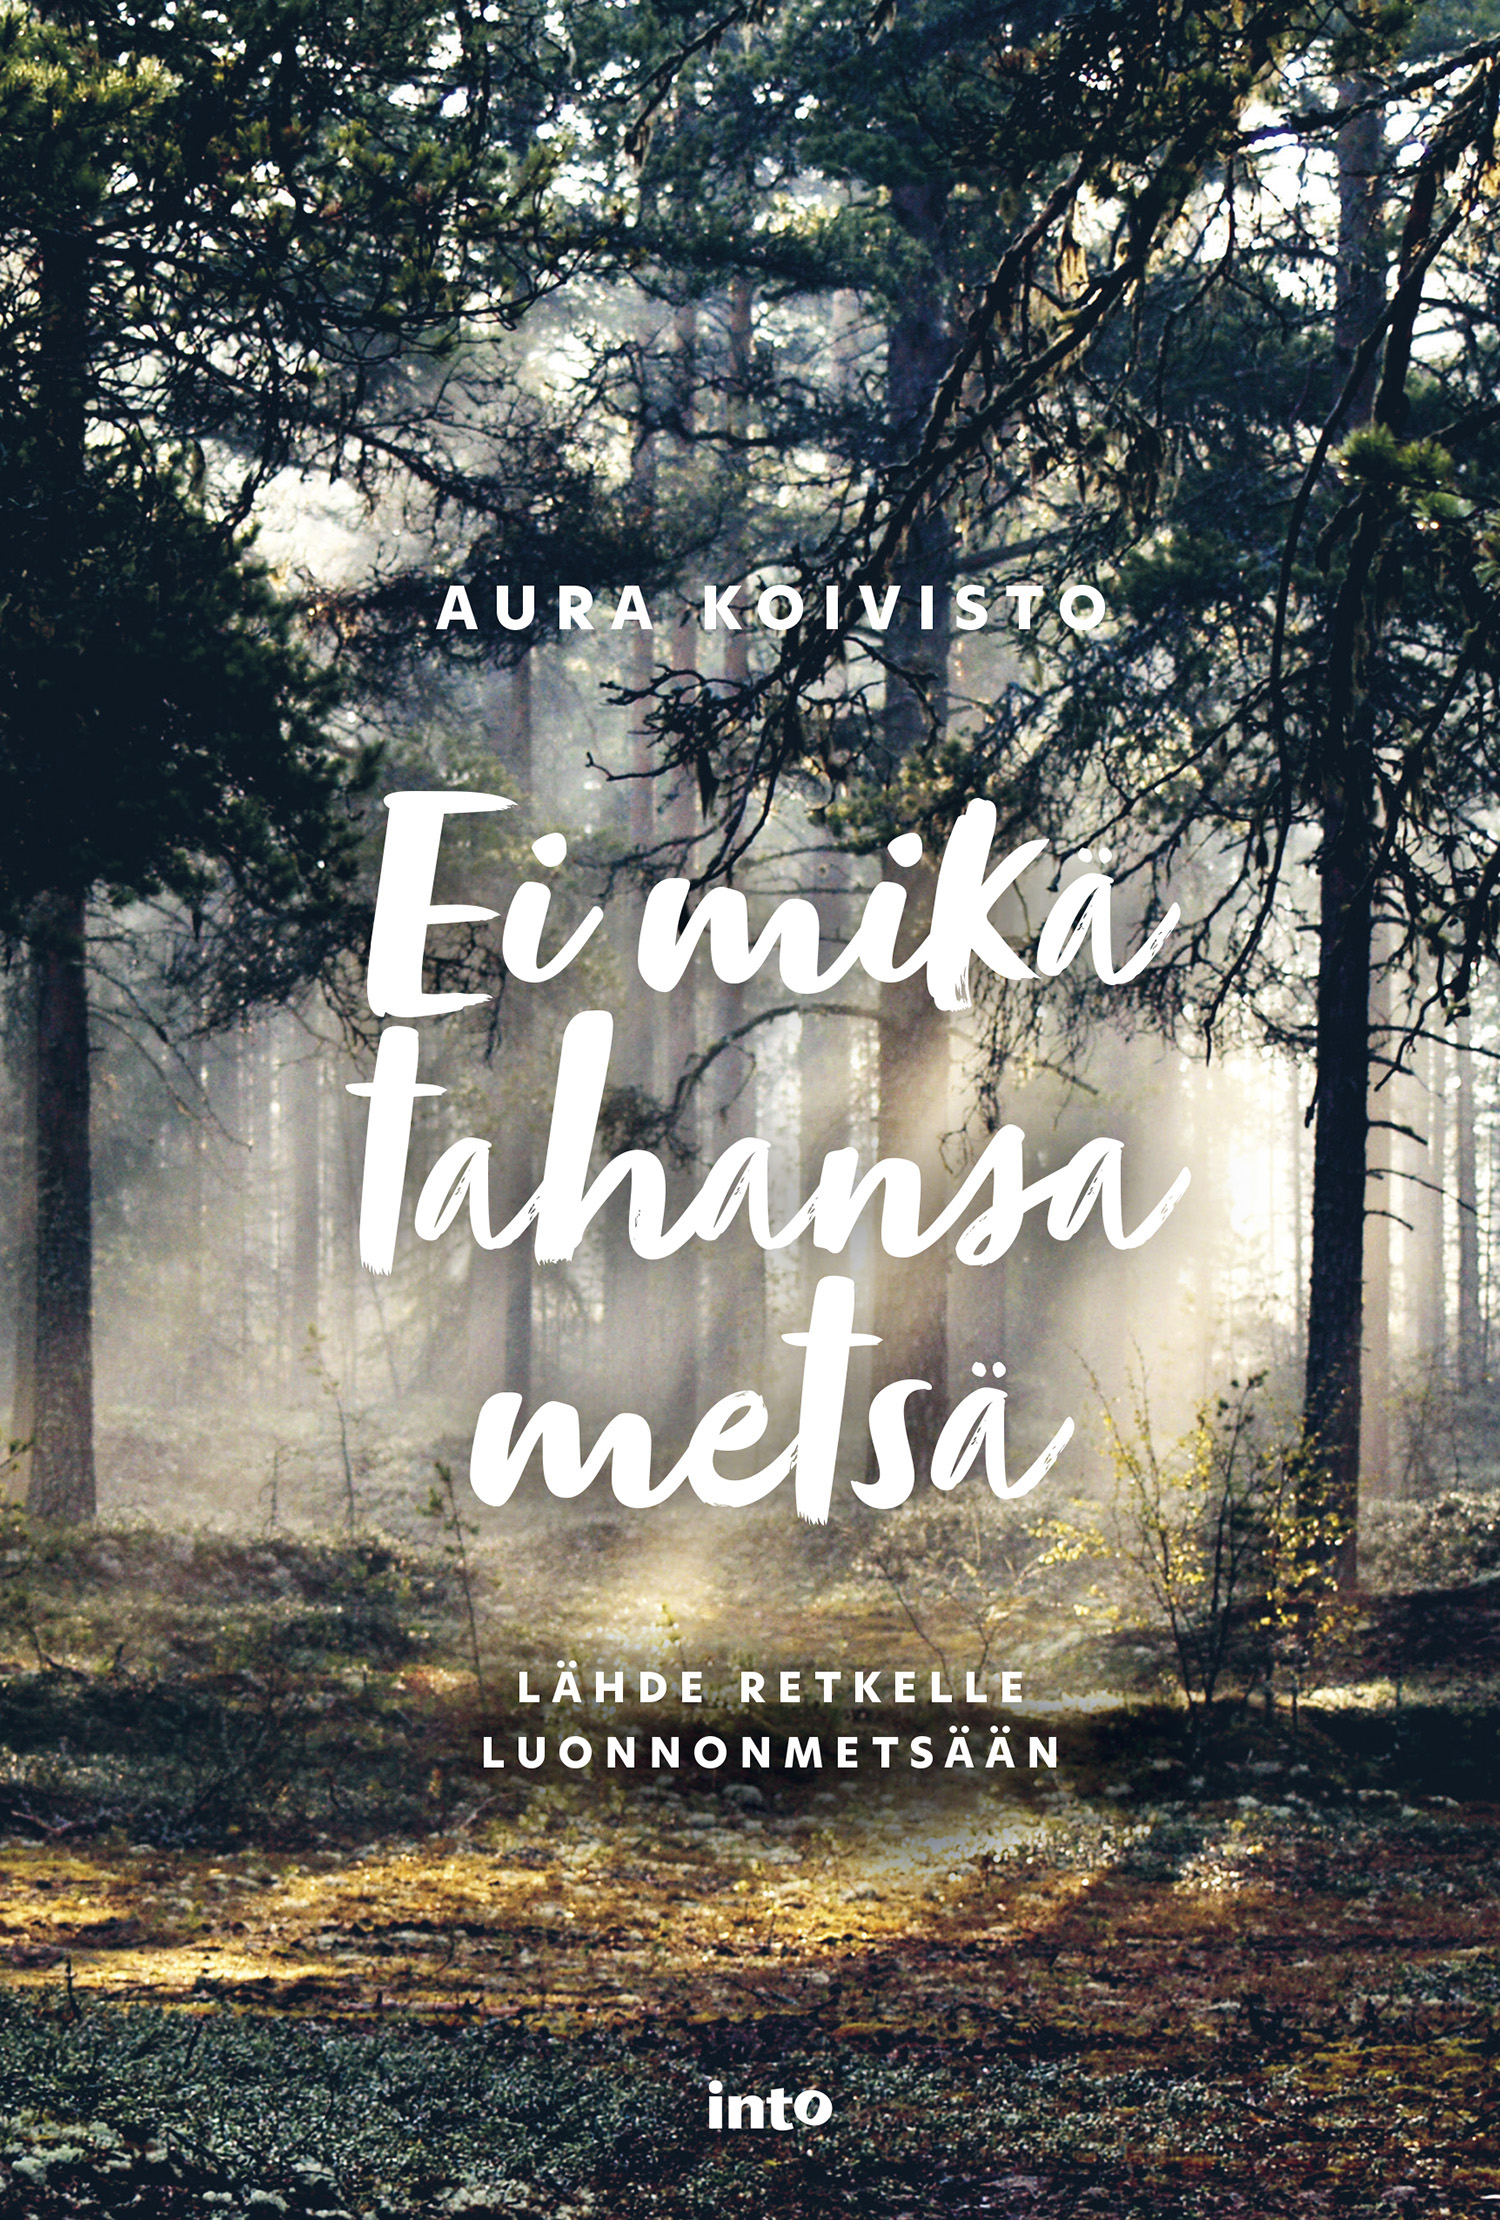 Koivisto, Aura - Ei mikä tahansa metsä: Lähde retkelle luonnonmetsään, e-kirja